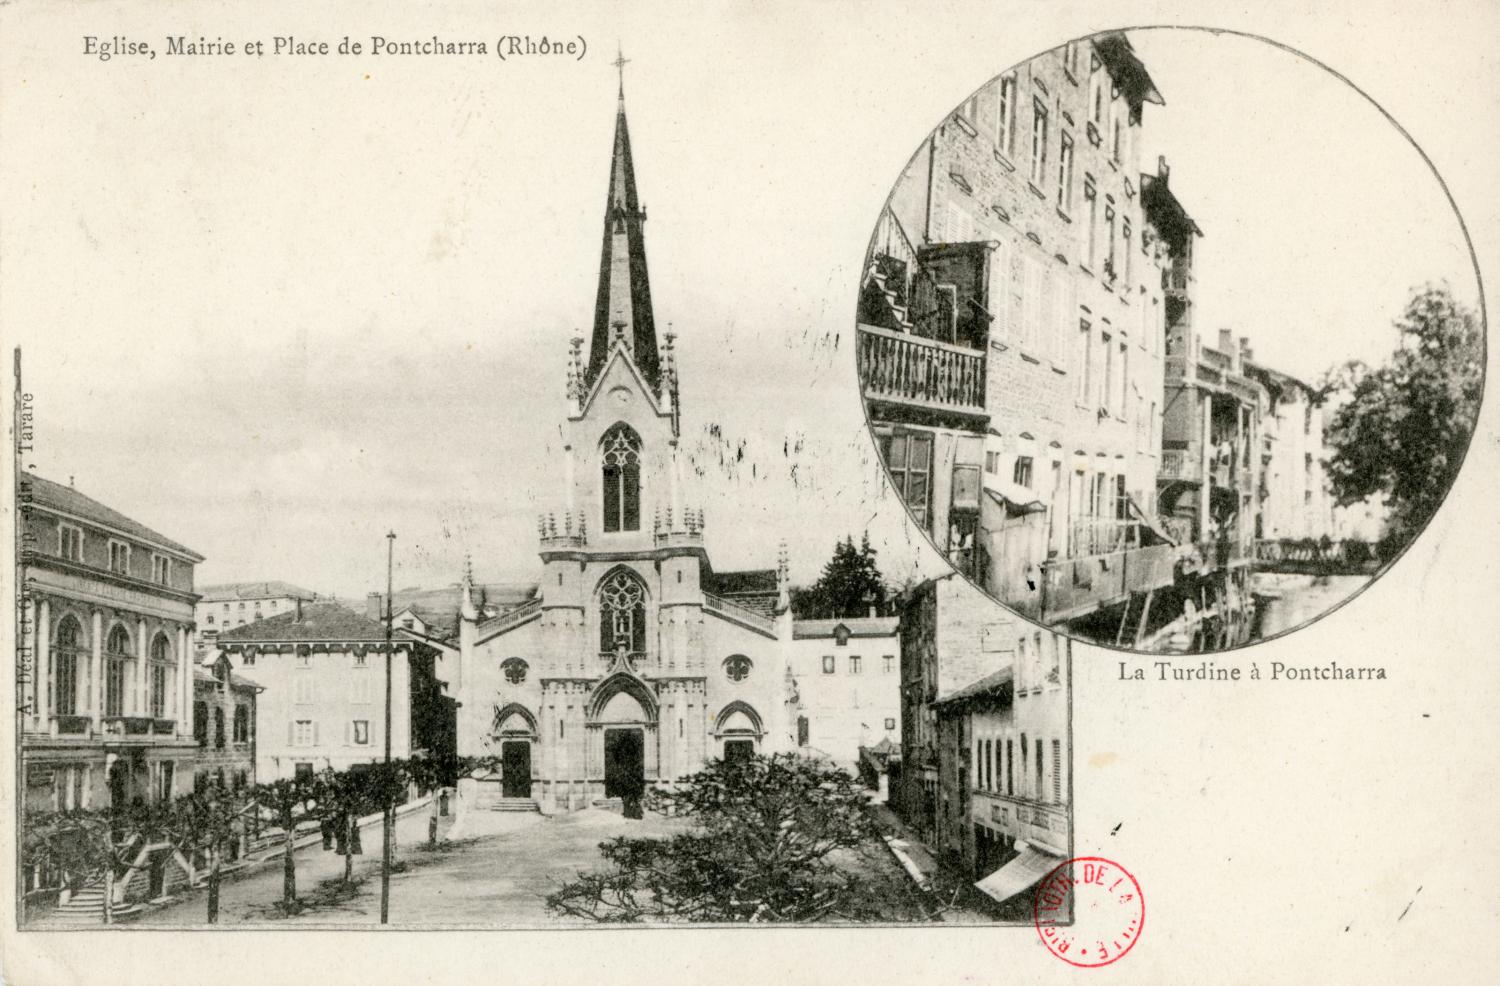 Eglise, Mairie et Place de Pontcharra (Rhône)